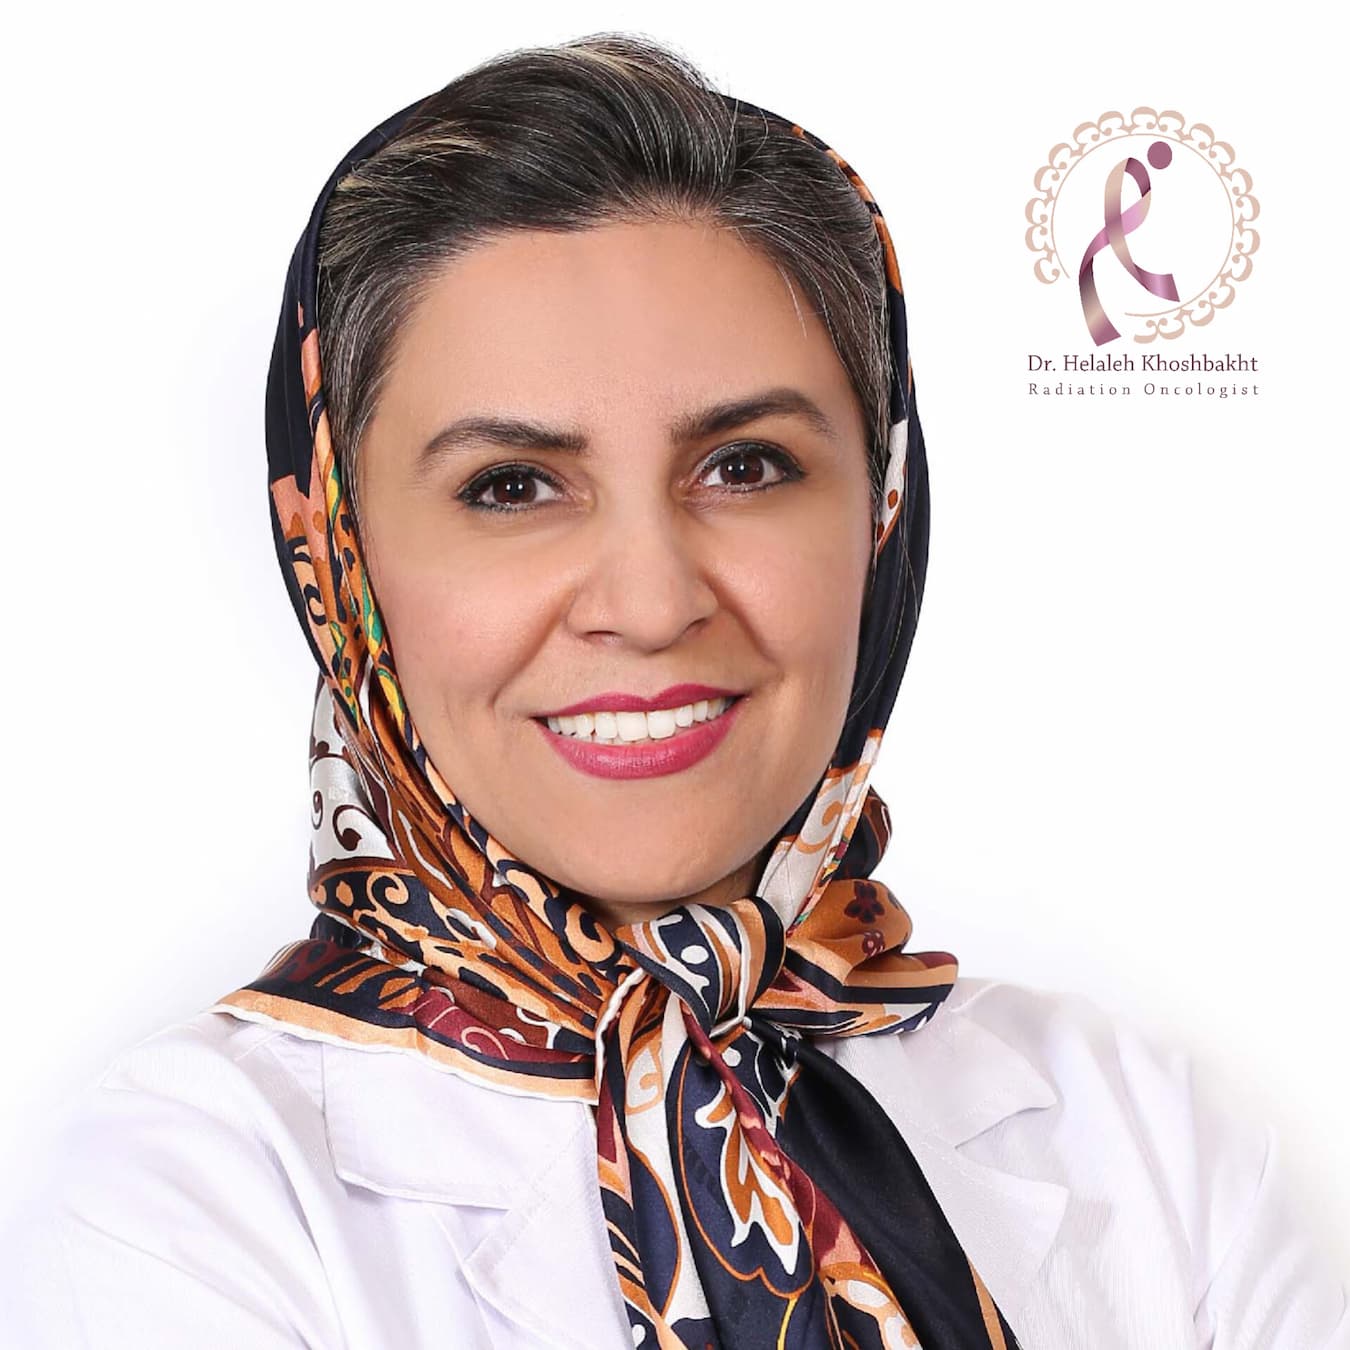 دکتر هلاله خوشبخت بهترین متخصص رادیوتراپی پیشرفته و توموتراپی و سرطان در تهران